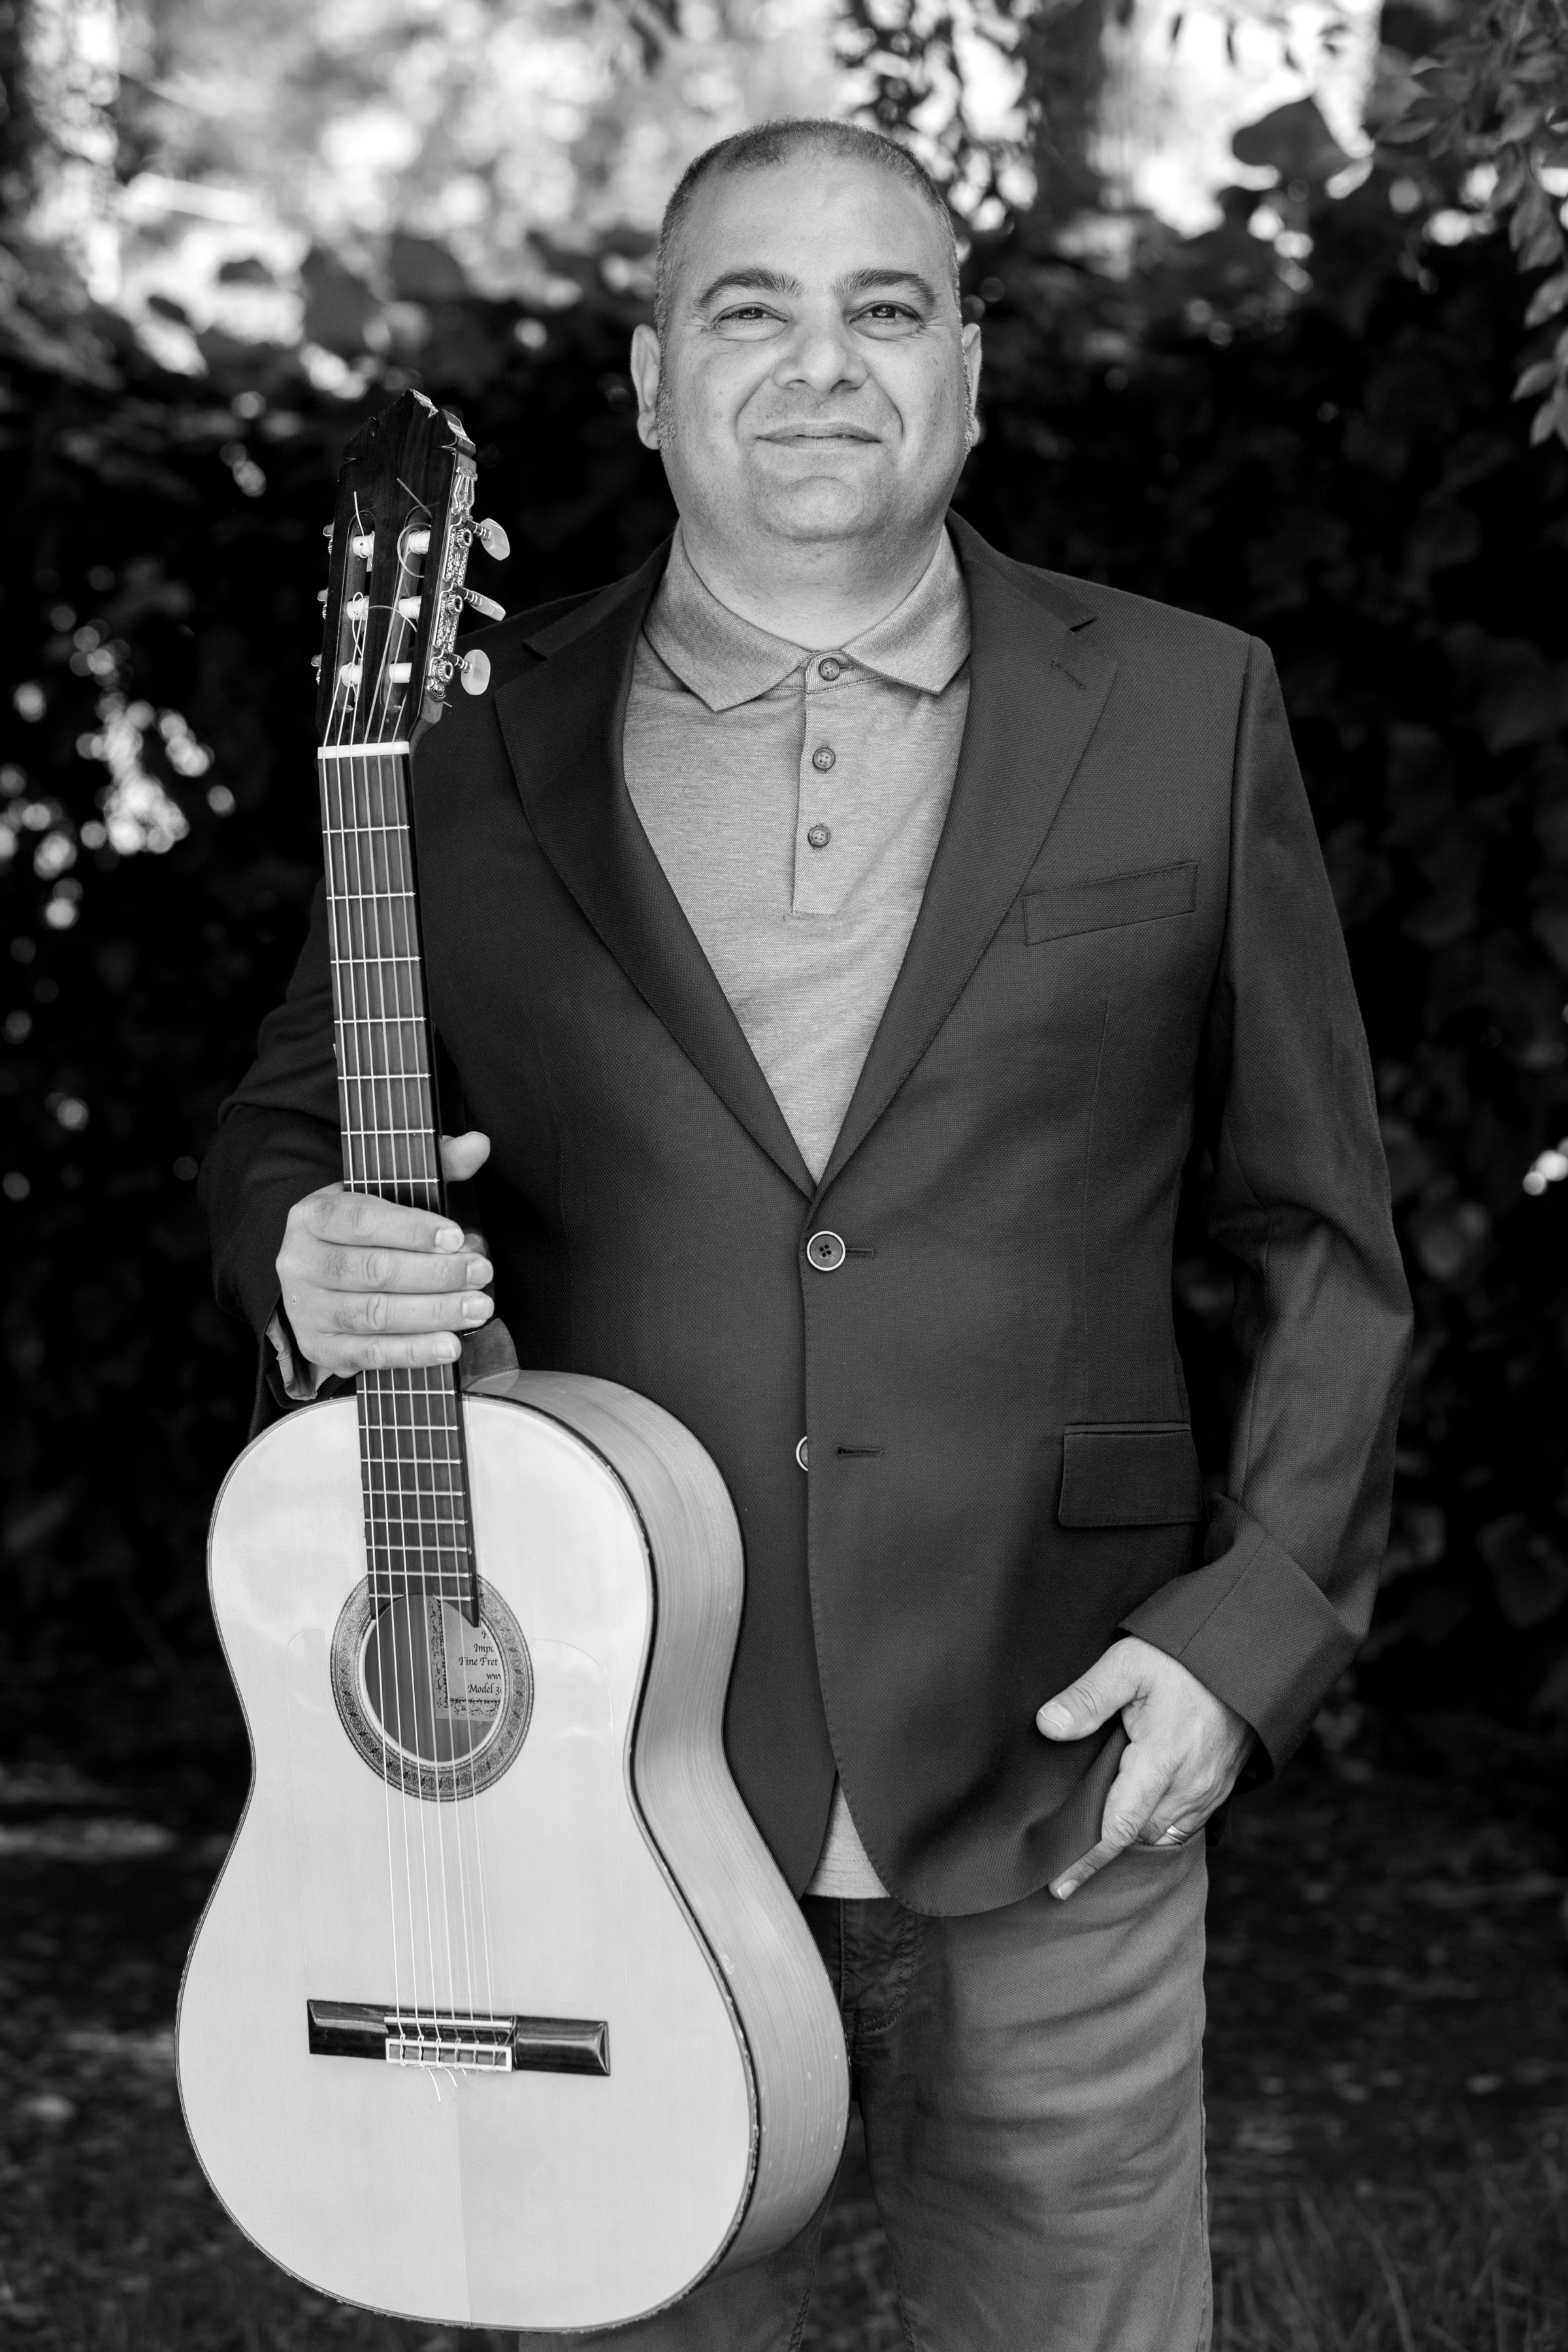 Learn guitar with fabulous online teacher - Chris Shahin